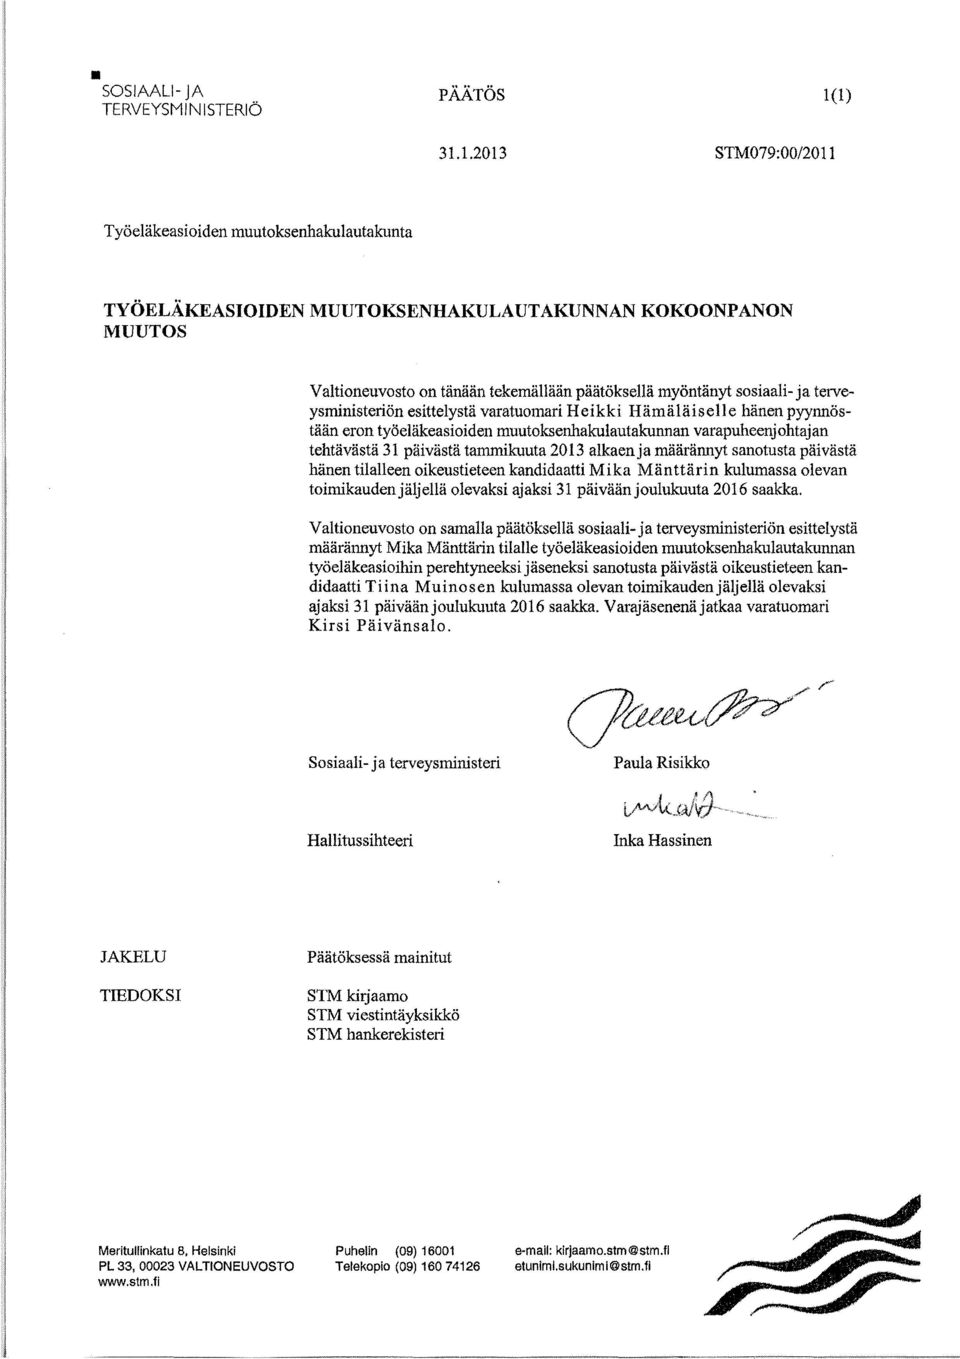 varatuomari Heikki Hämäläiselle hänen pyynnöstään eron työeläkeasioiden muutoksenhakulautakunnan varapuheenjohtajan tehtävästä 31 päivästä tammikuuta 2013 alkaenja määrännyt sanotusta päivästä hänen